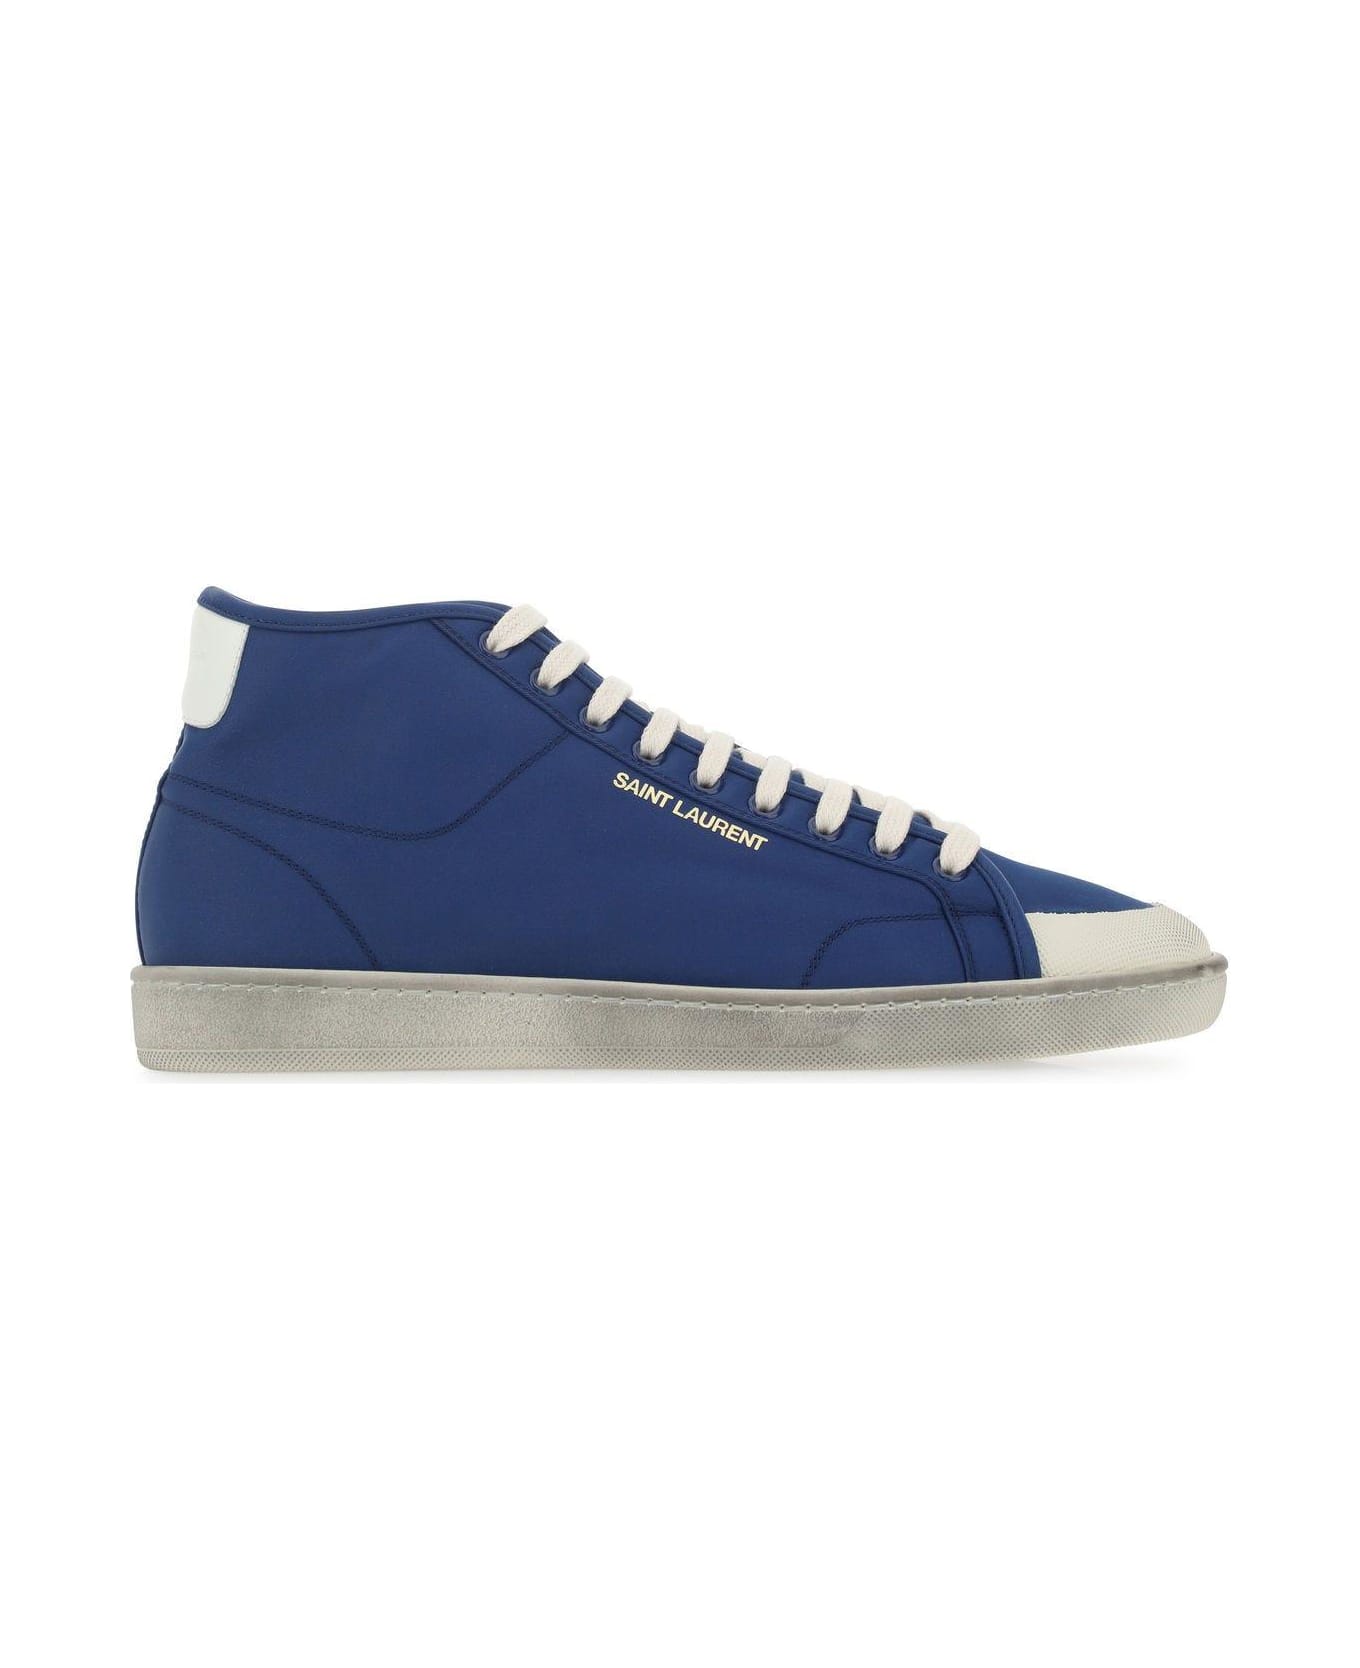 Saint Laurent Blue Nylon Sl/39 Sneakers - Blue スニーカー